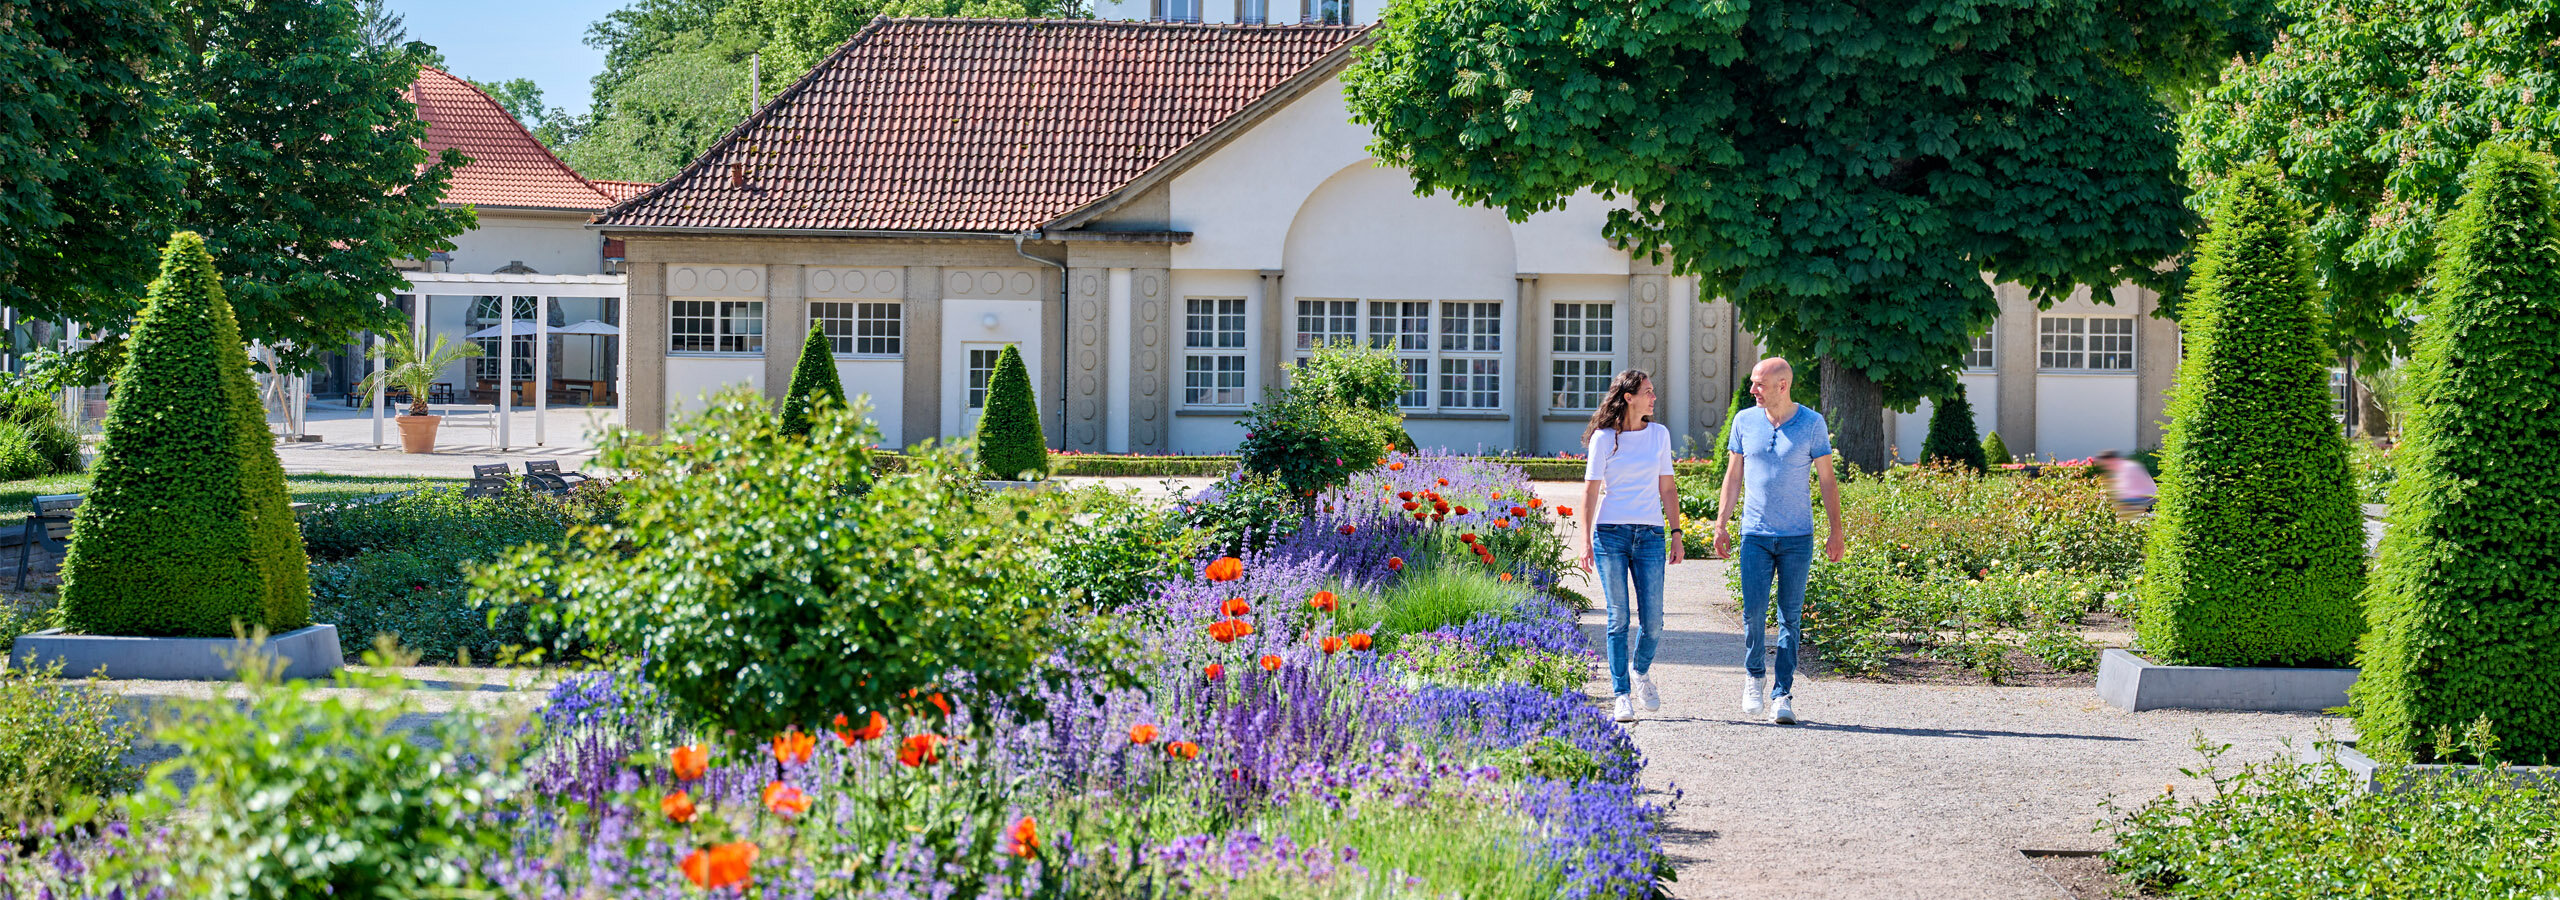 Eine Frau und ein Mann gehen in einem Garten spazieren, in dem Klatschmohn, Lavendel, Rosen und Buchsbäume blühen. | © Florian Trykowski 